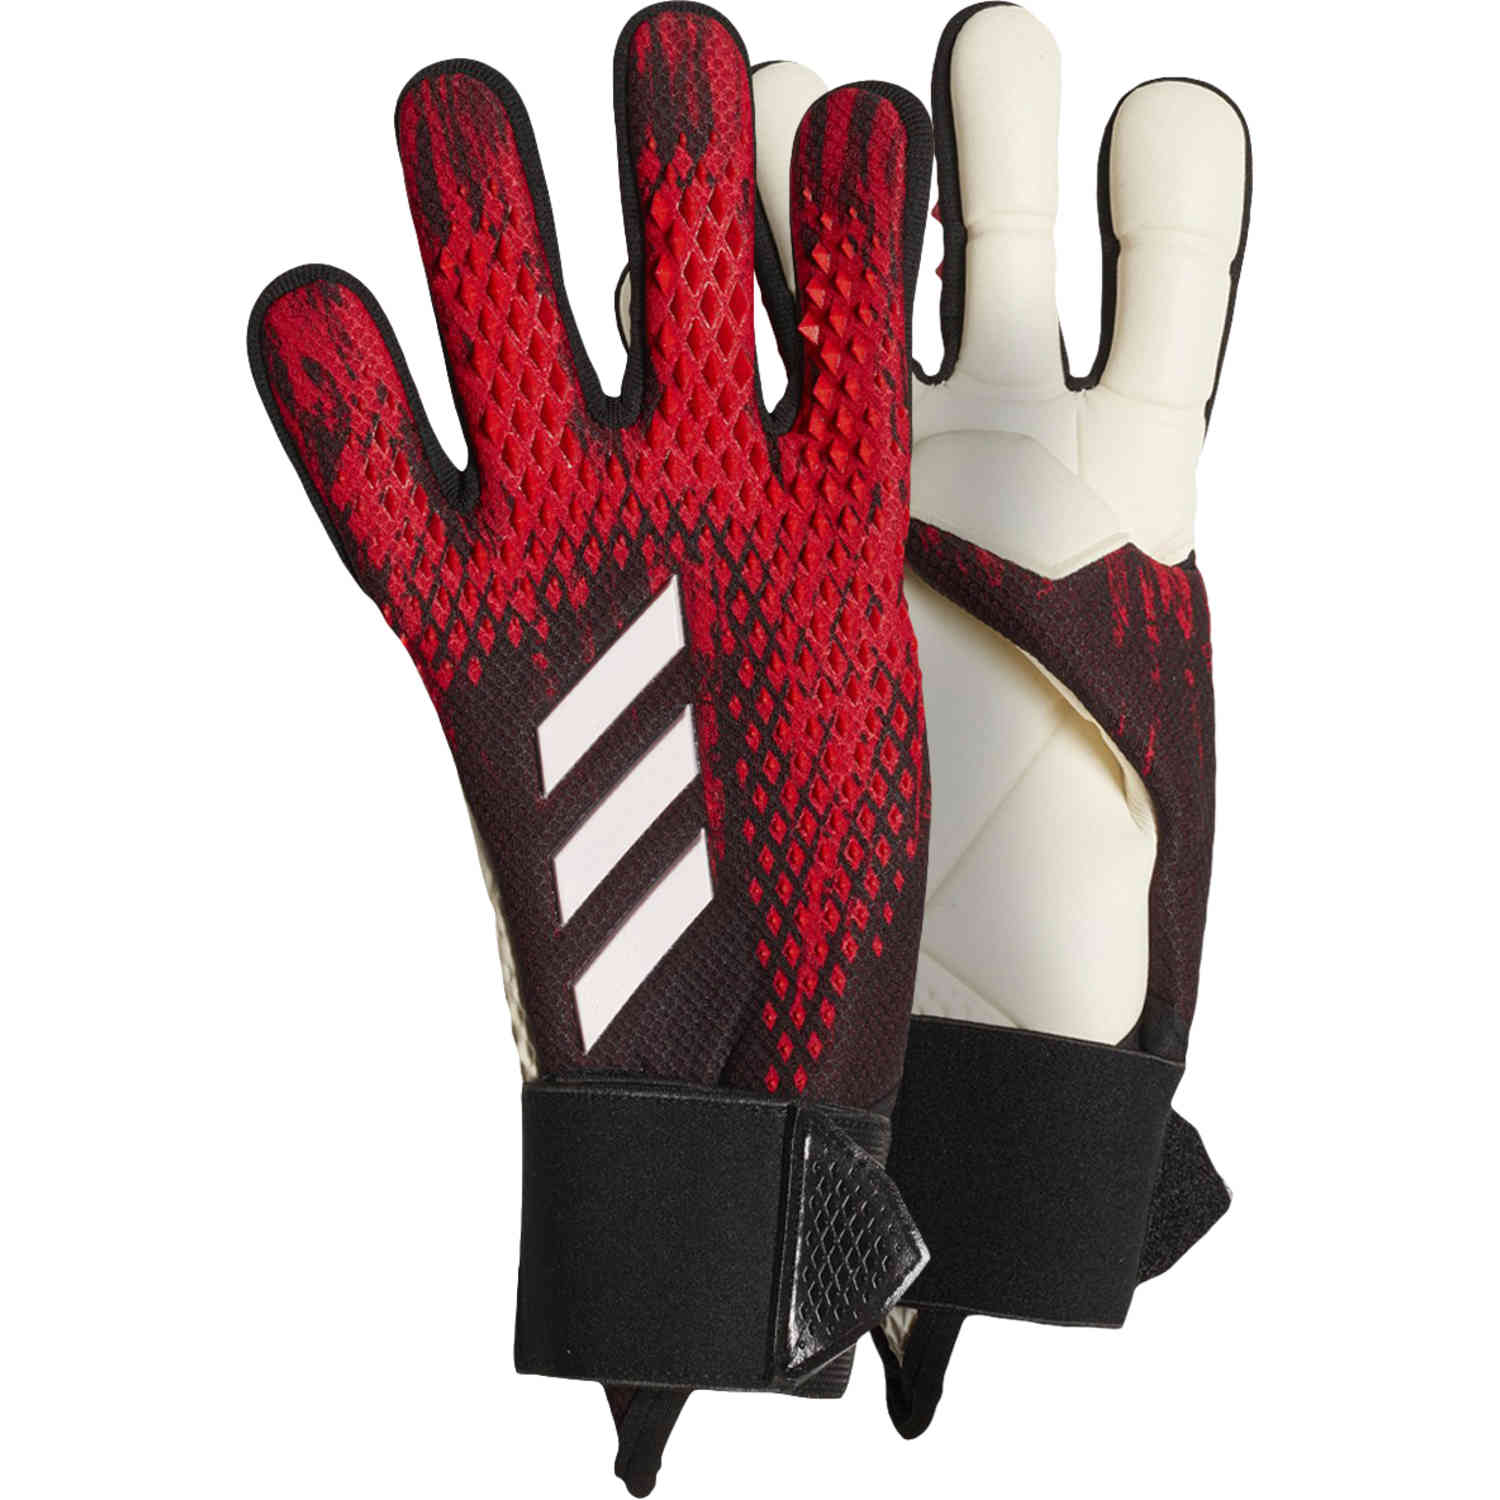 predator junior goalkeeper gloves